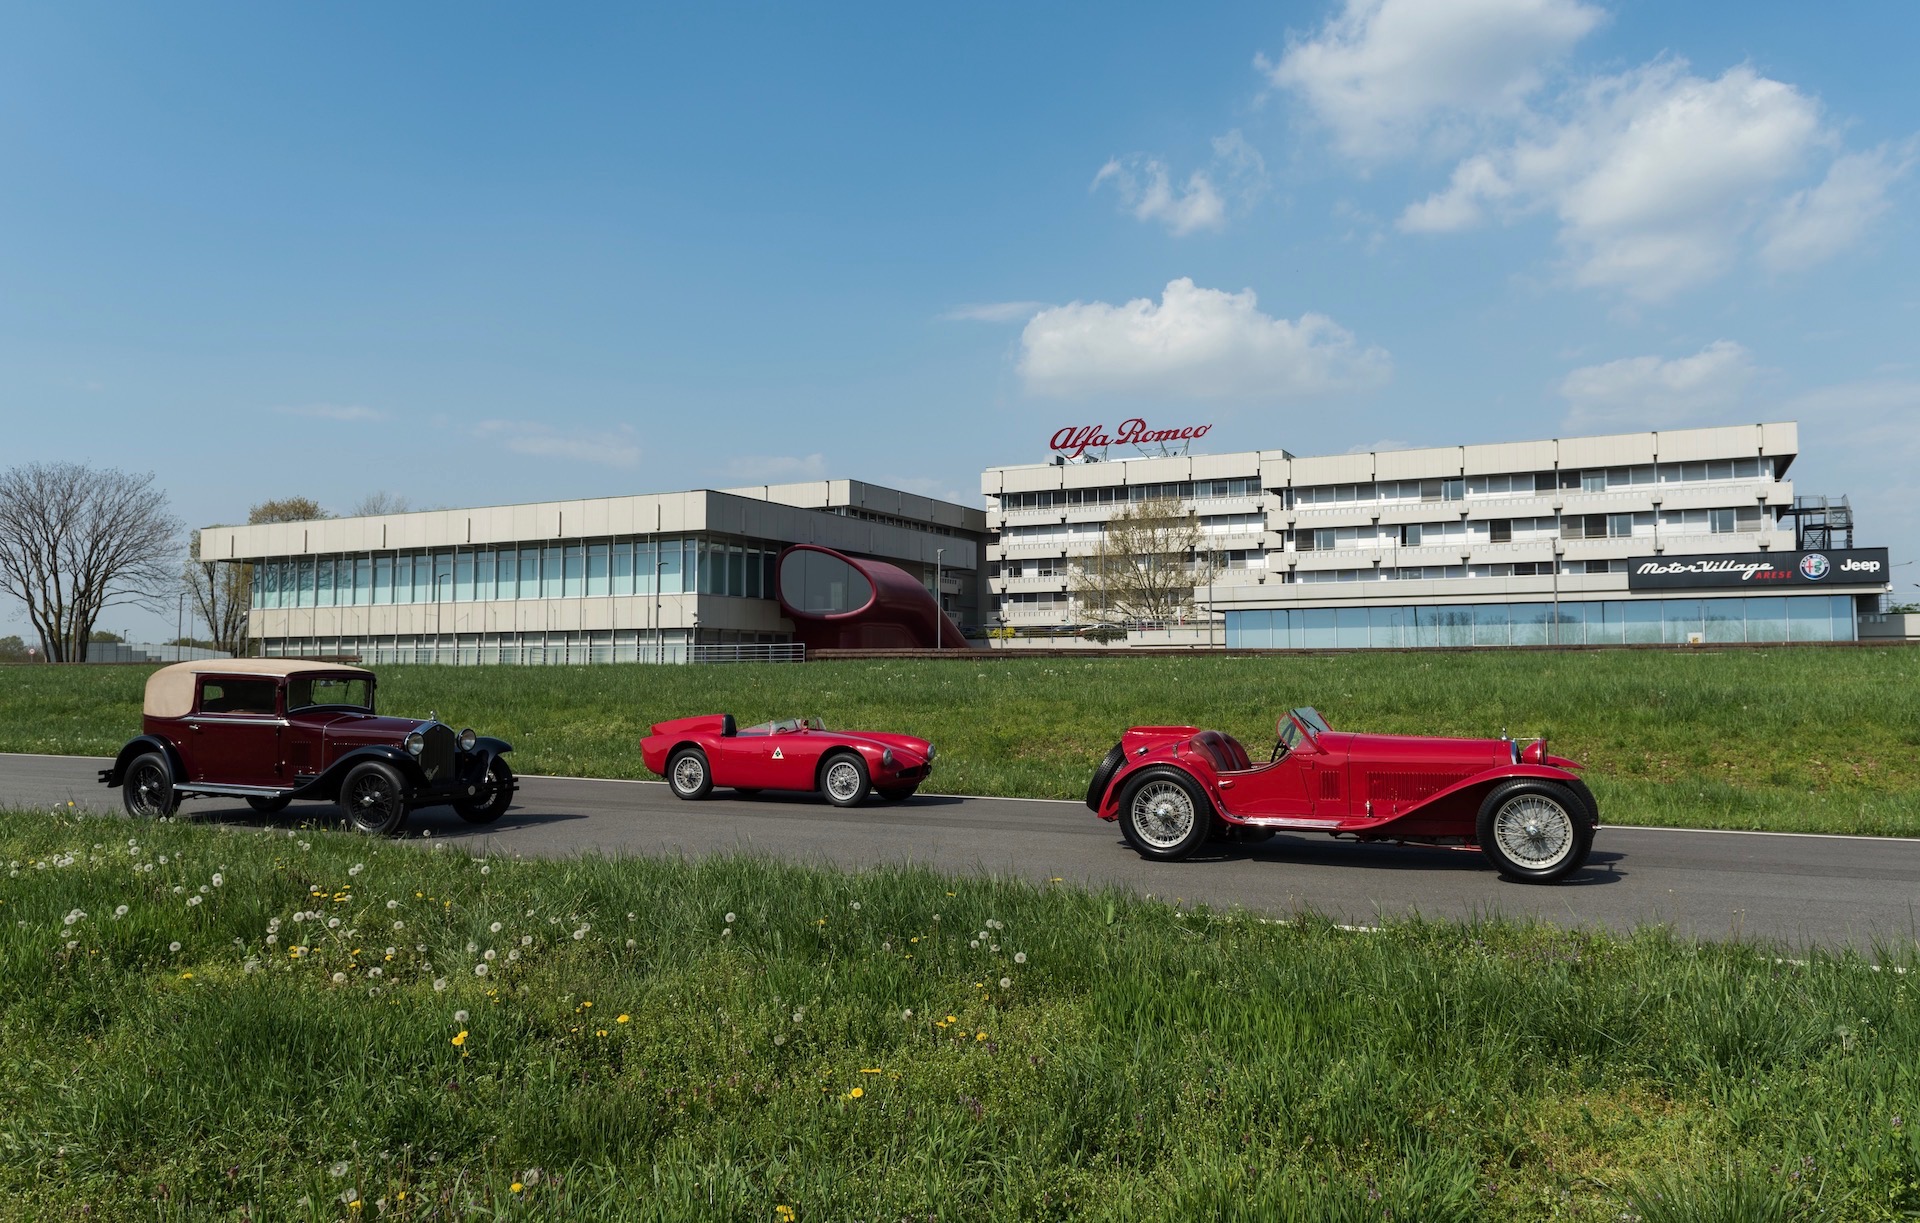 Alfa Romeo announces ‘Classiche’ heritage program